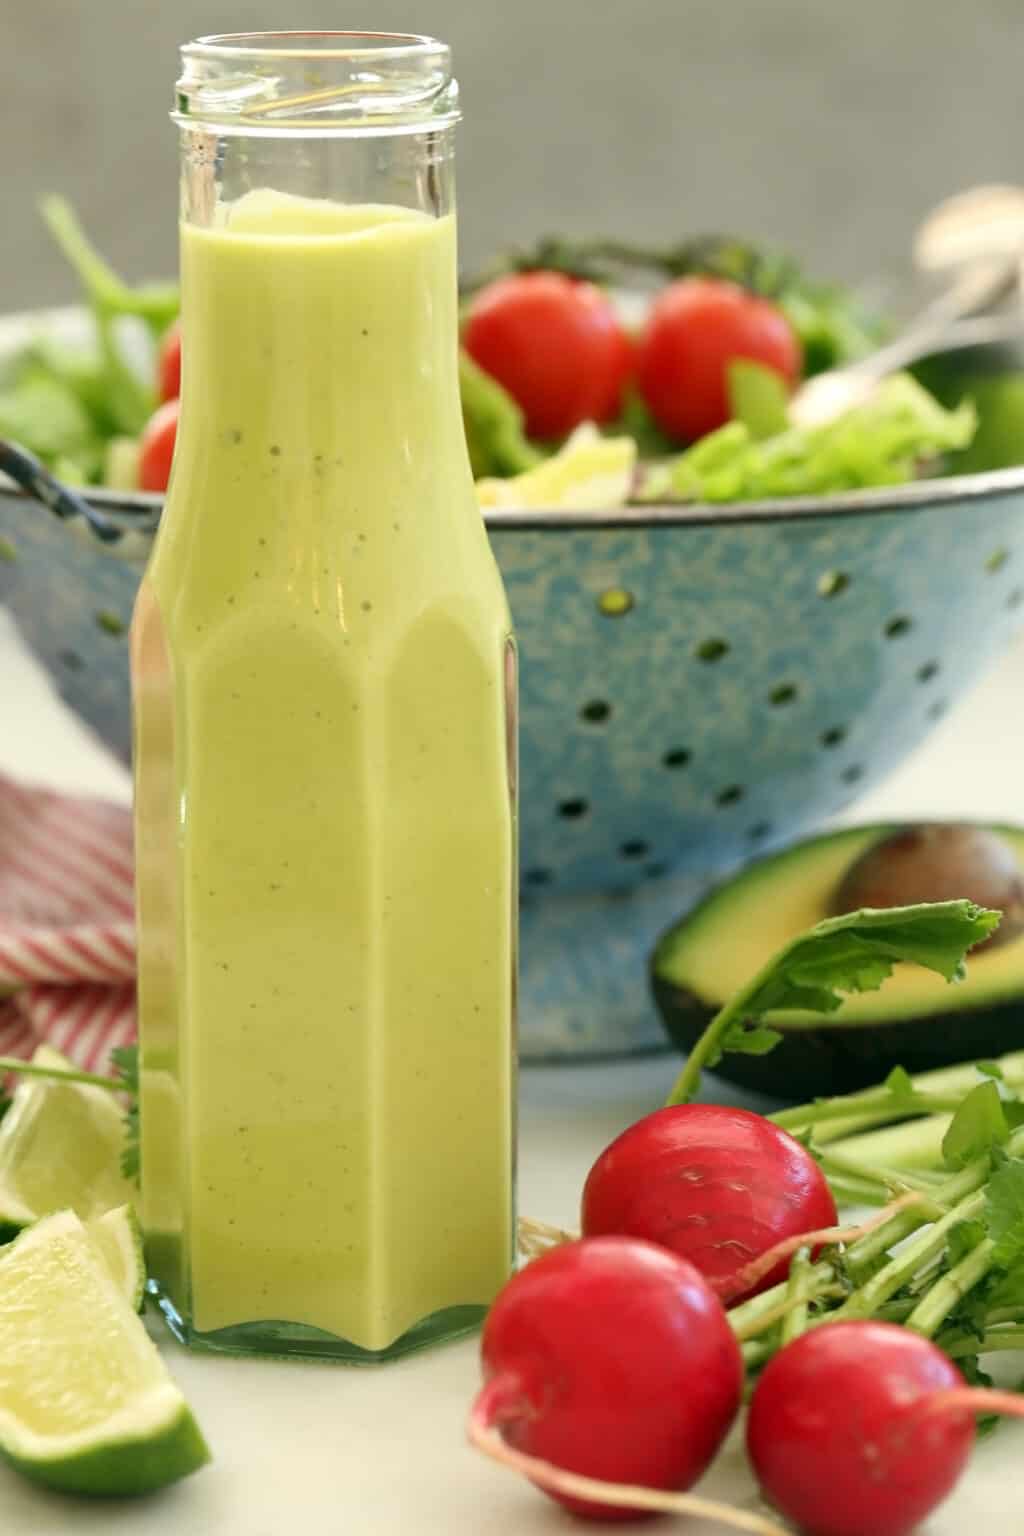 Avocado Salad Dressing